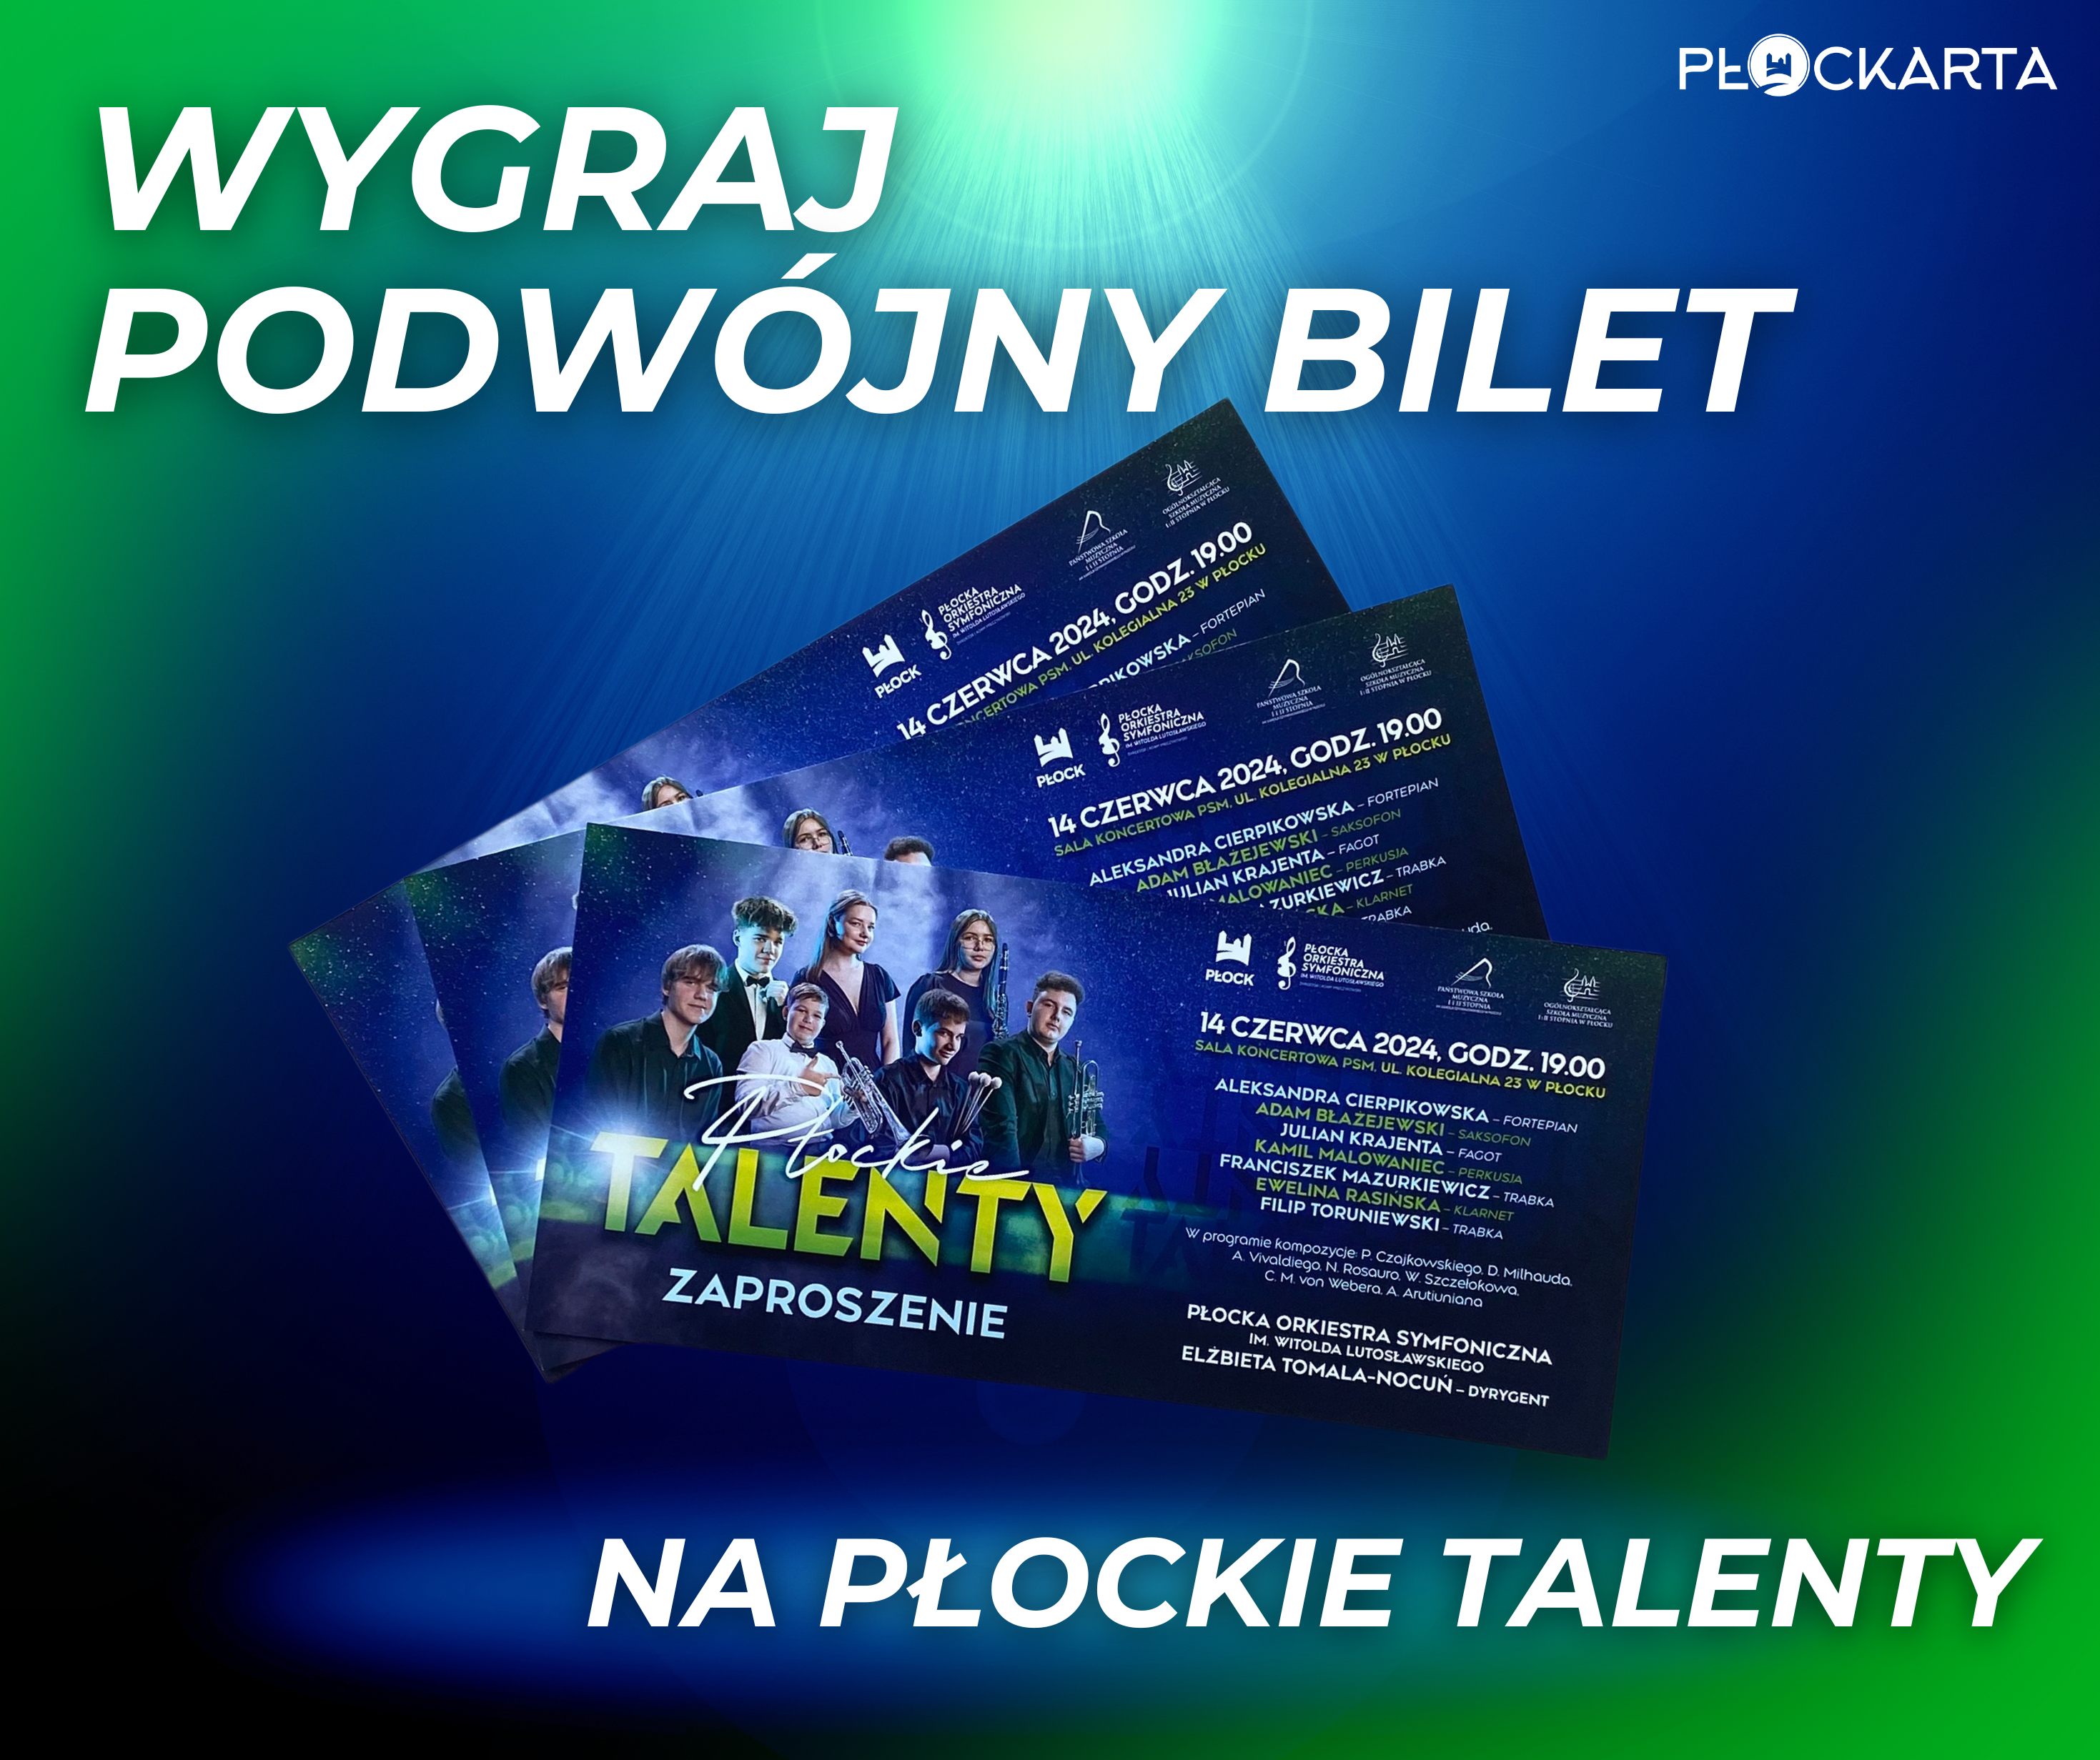 aktualność: Wygraj podwójny bilet na Płockie Talenty!